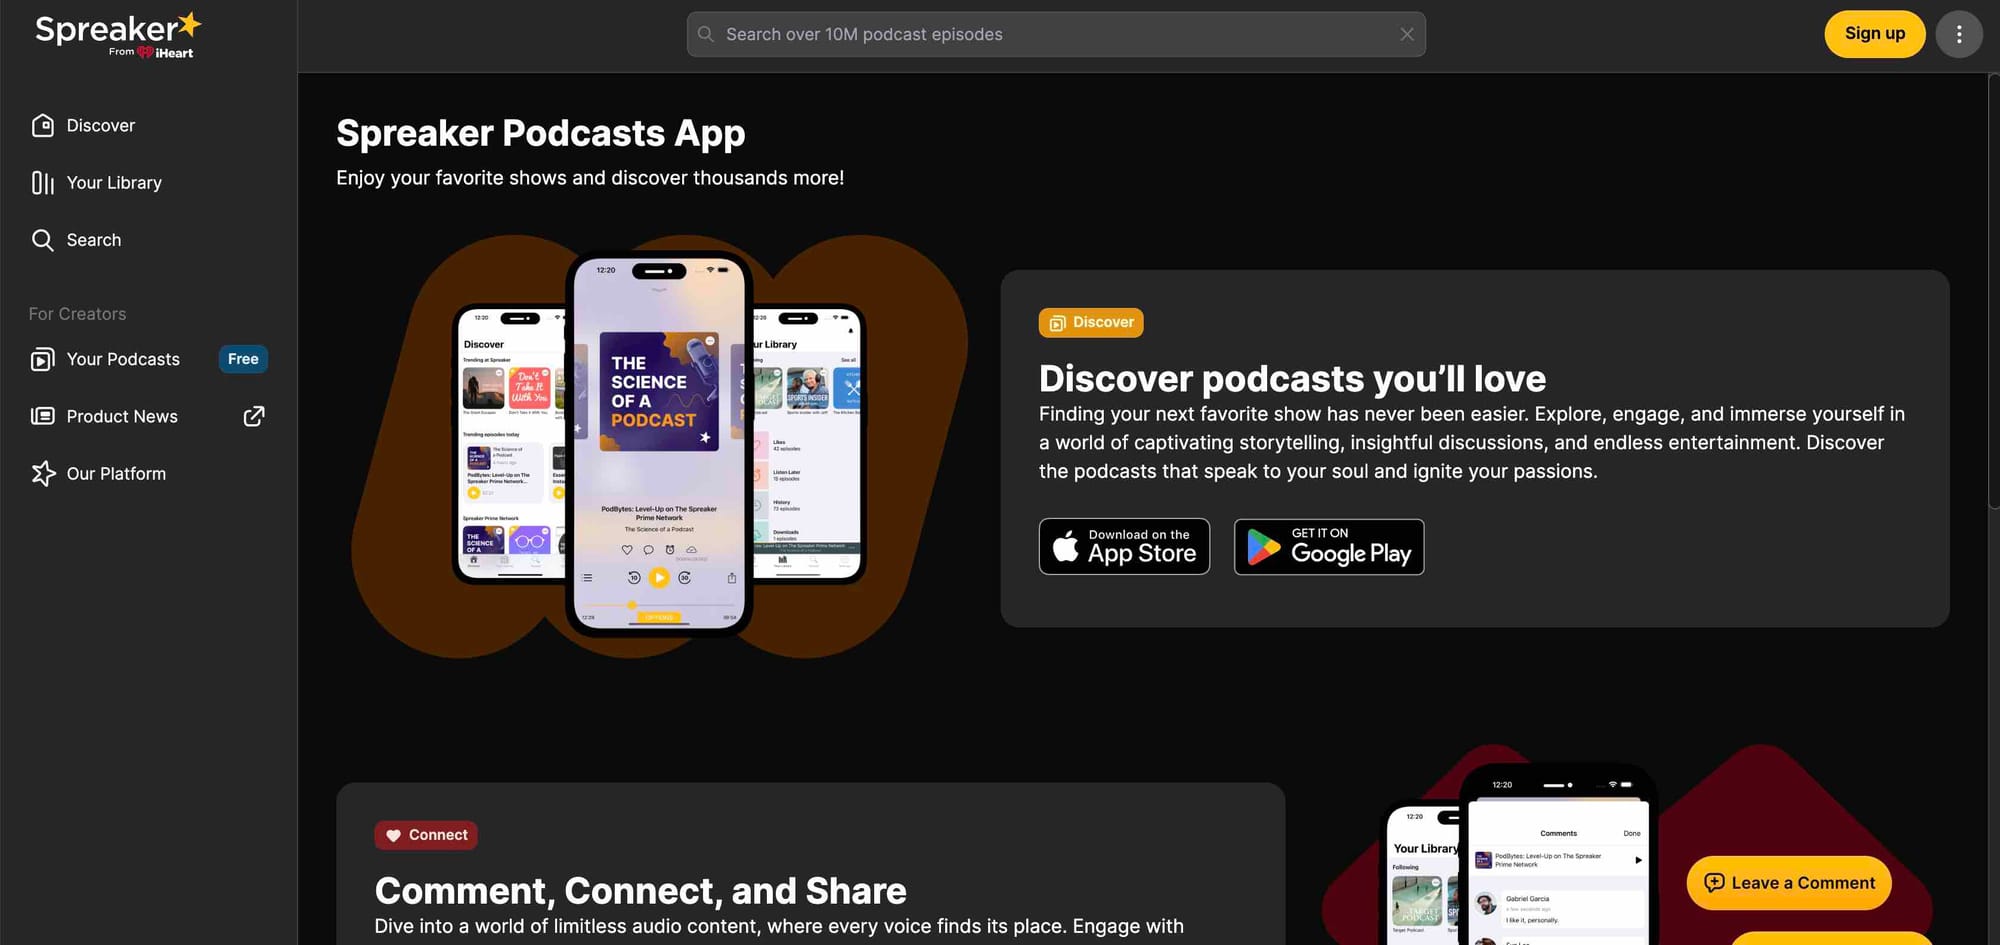 Spreaker Podcast App's homepage